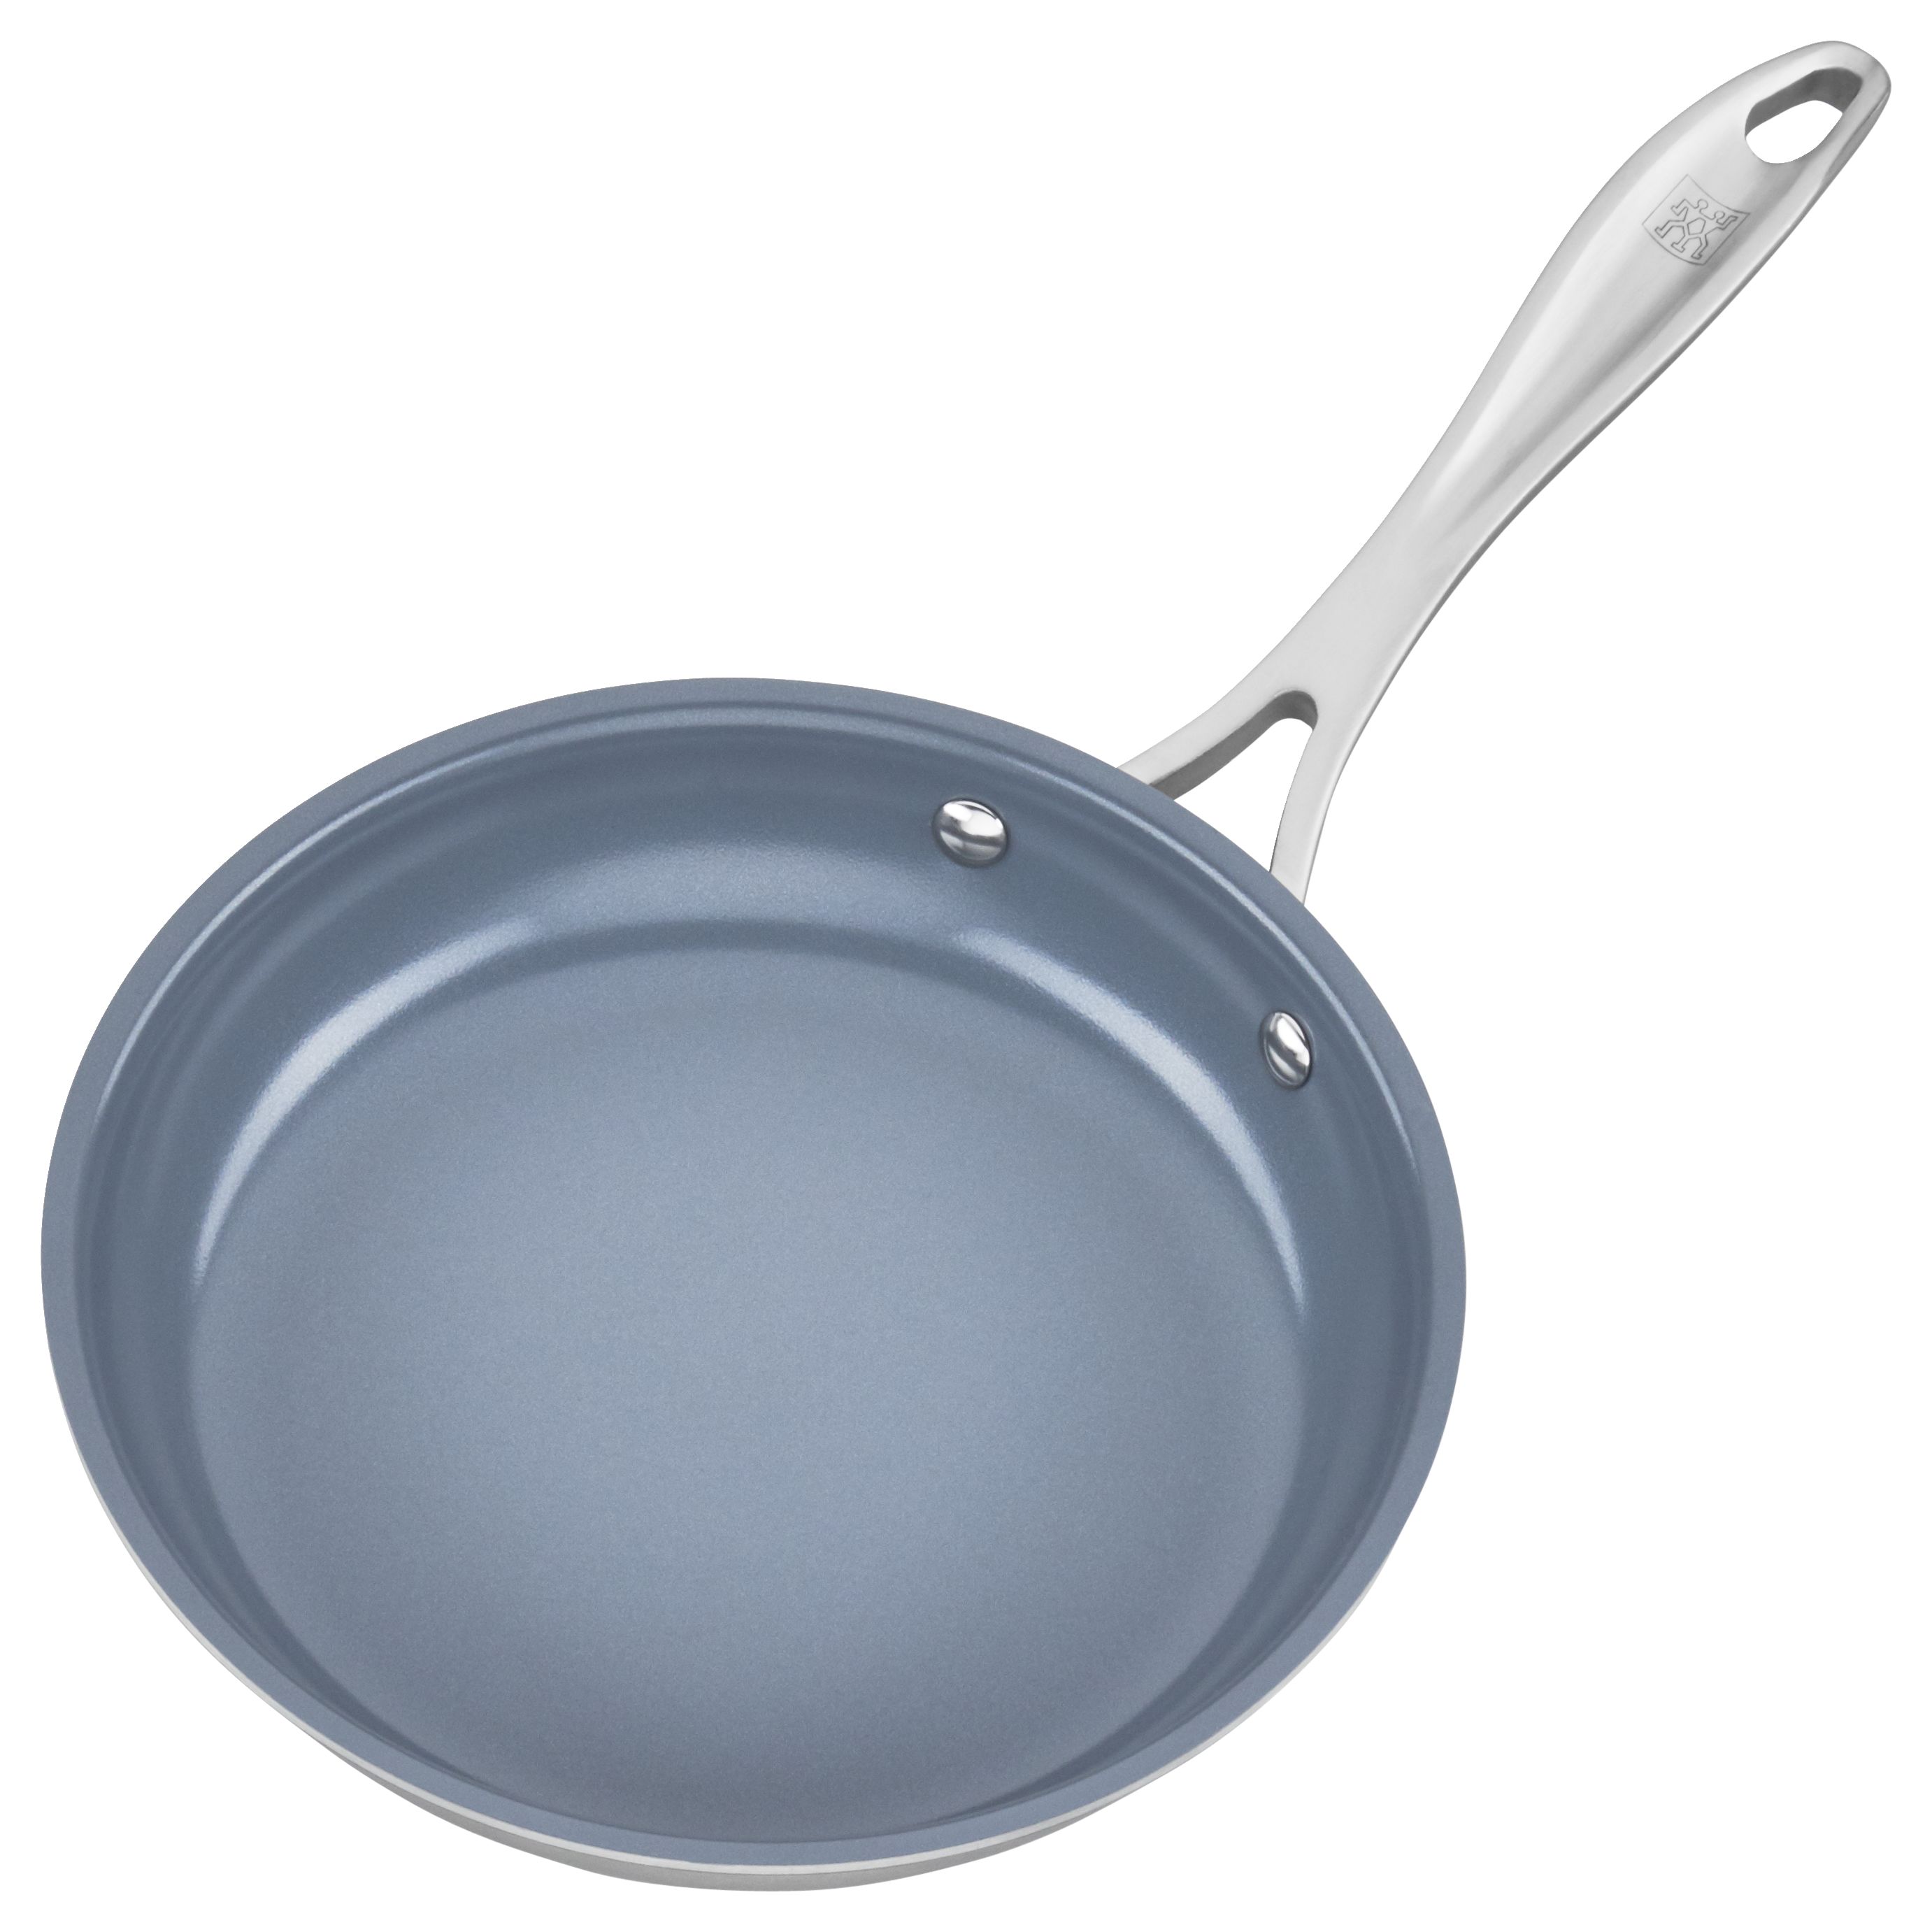 MICHELANGELO 8 Inch Nonstick Frying Pan with Lid, Small Frying Pan Nonstick  with Lid, Enamel Egg Pan with Lid, Non Stick Frying Pan with Granite